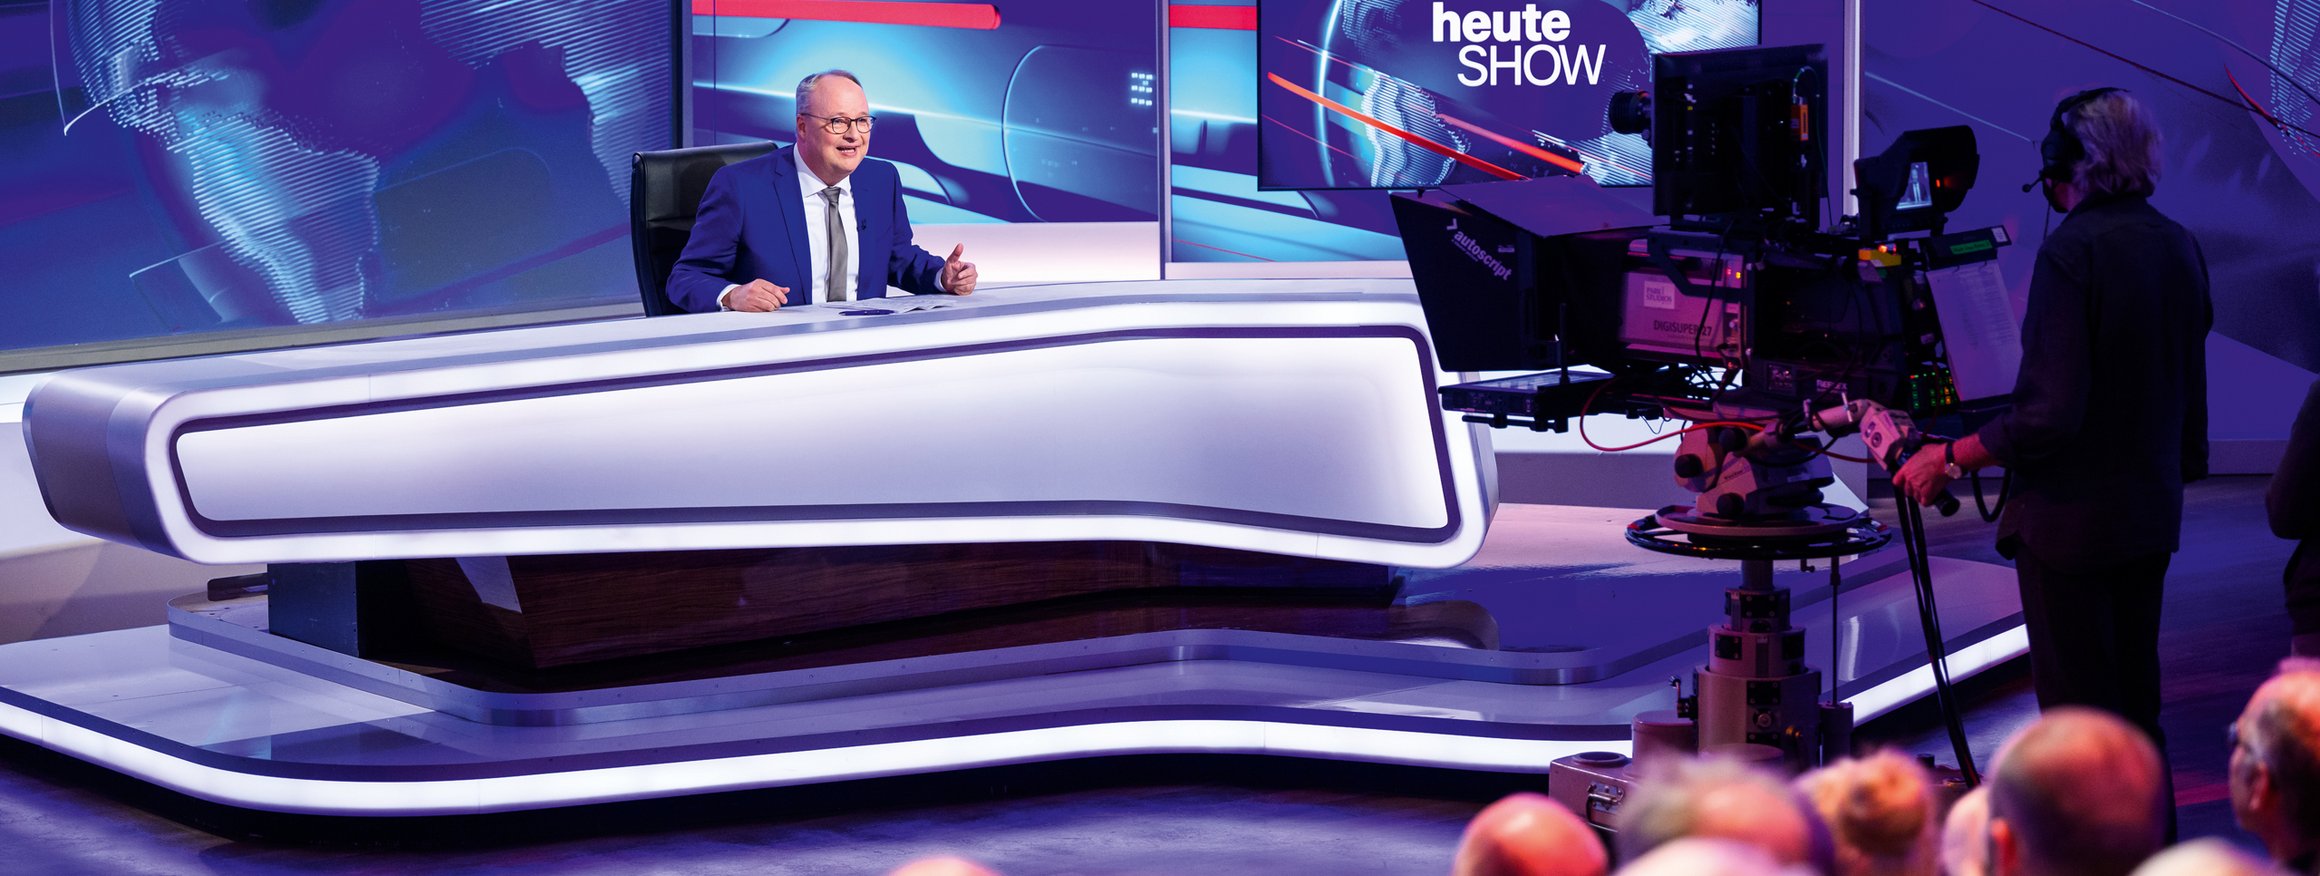 Der Moderator Oliver Welke sitzt in seinem ZDF-Fernsehstudio und moderiert die Heute Show